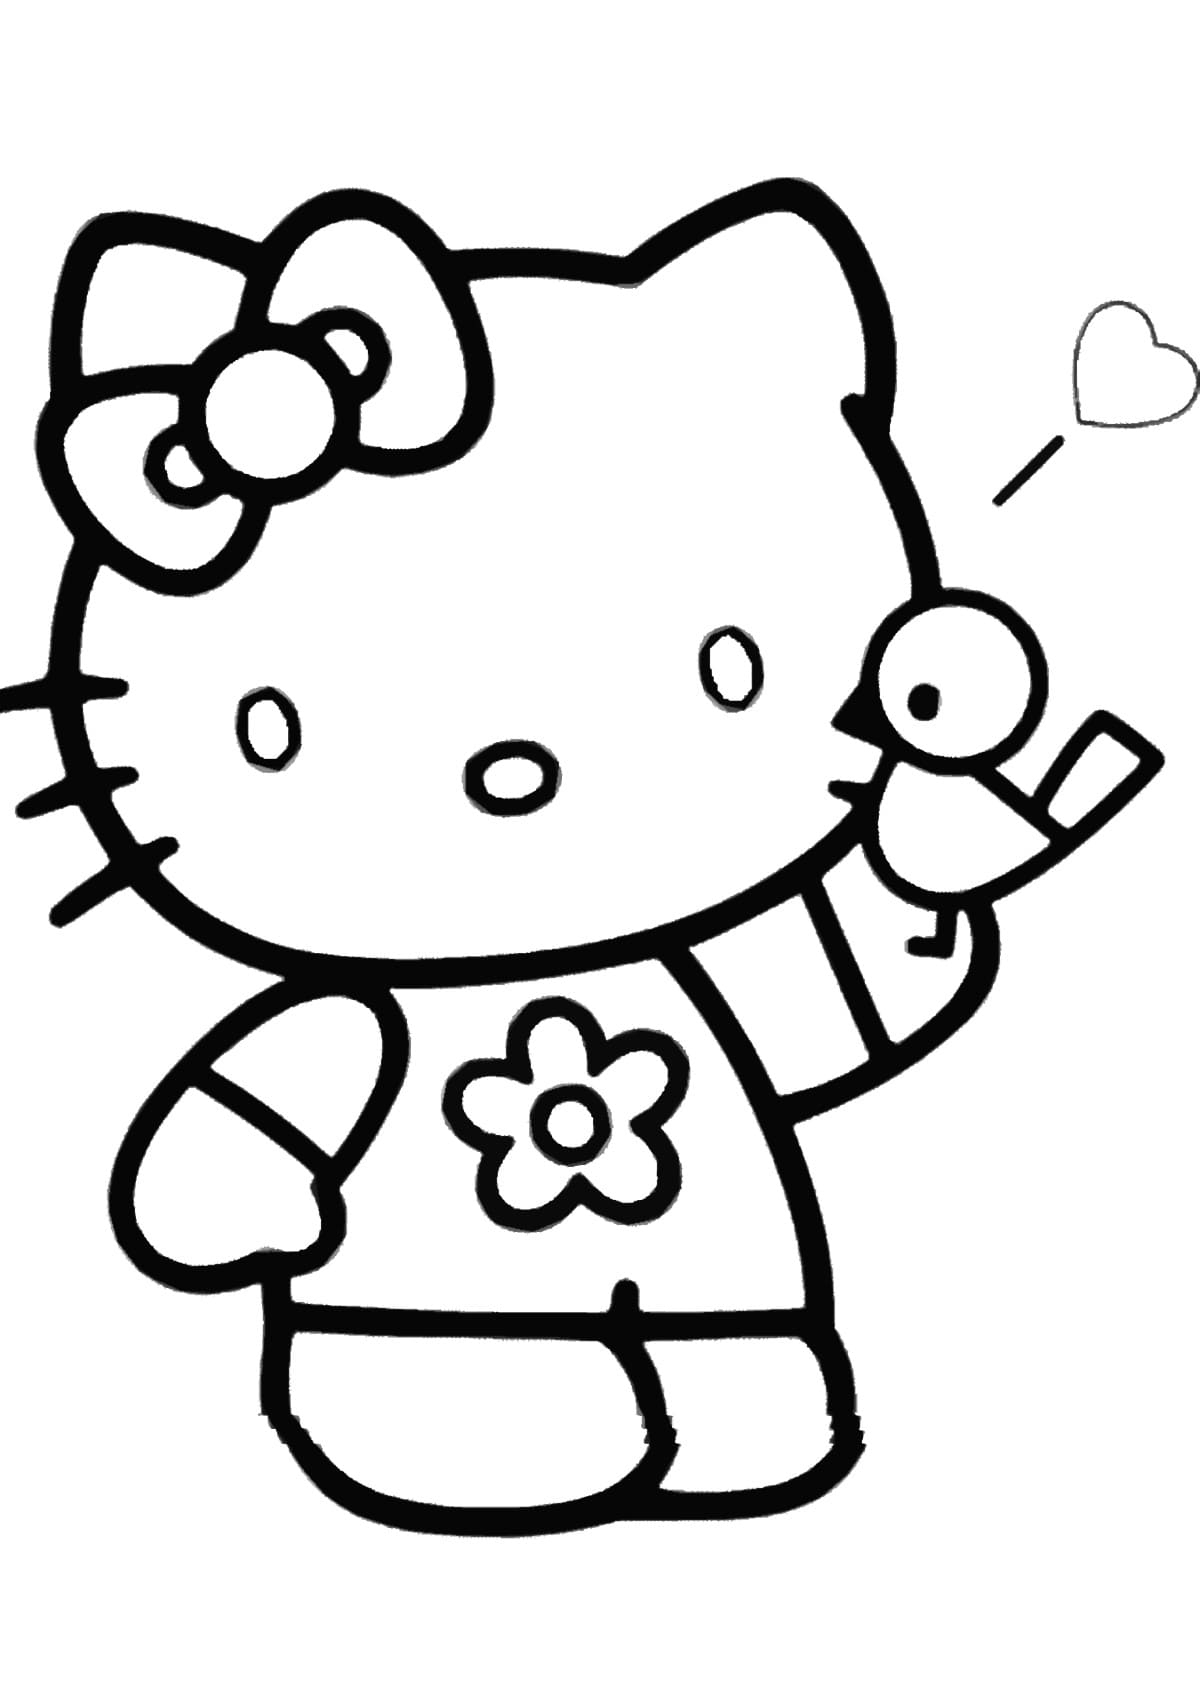 Coloriage Hello Kitty. 100 Coloriages Gratuites À Imprimer destiné Dessiner Hello Kitty 